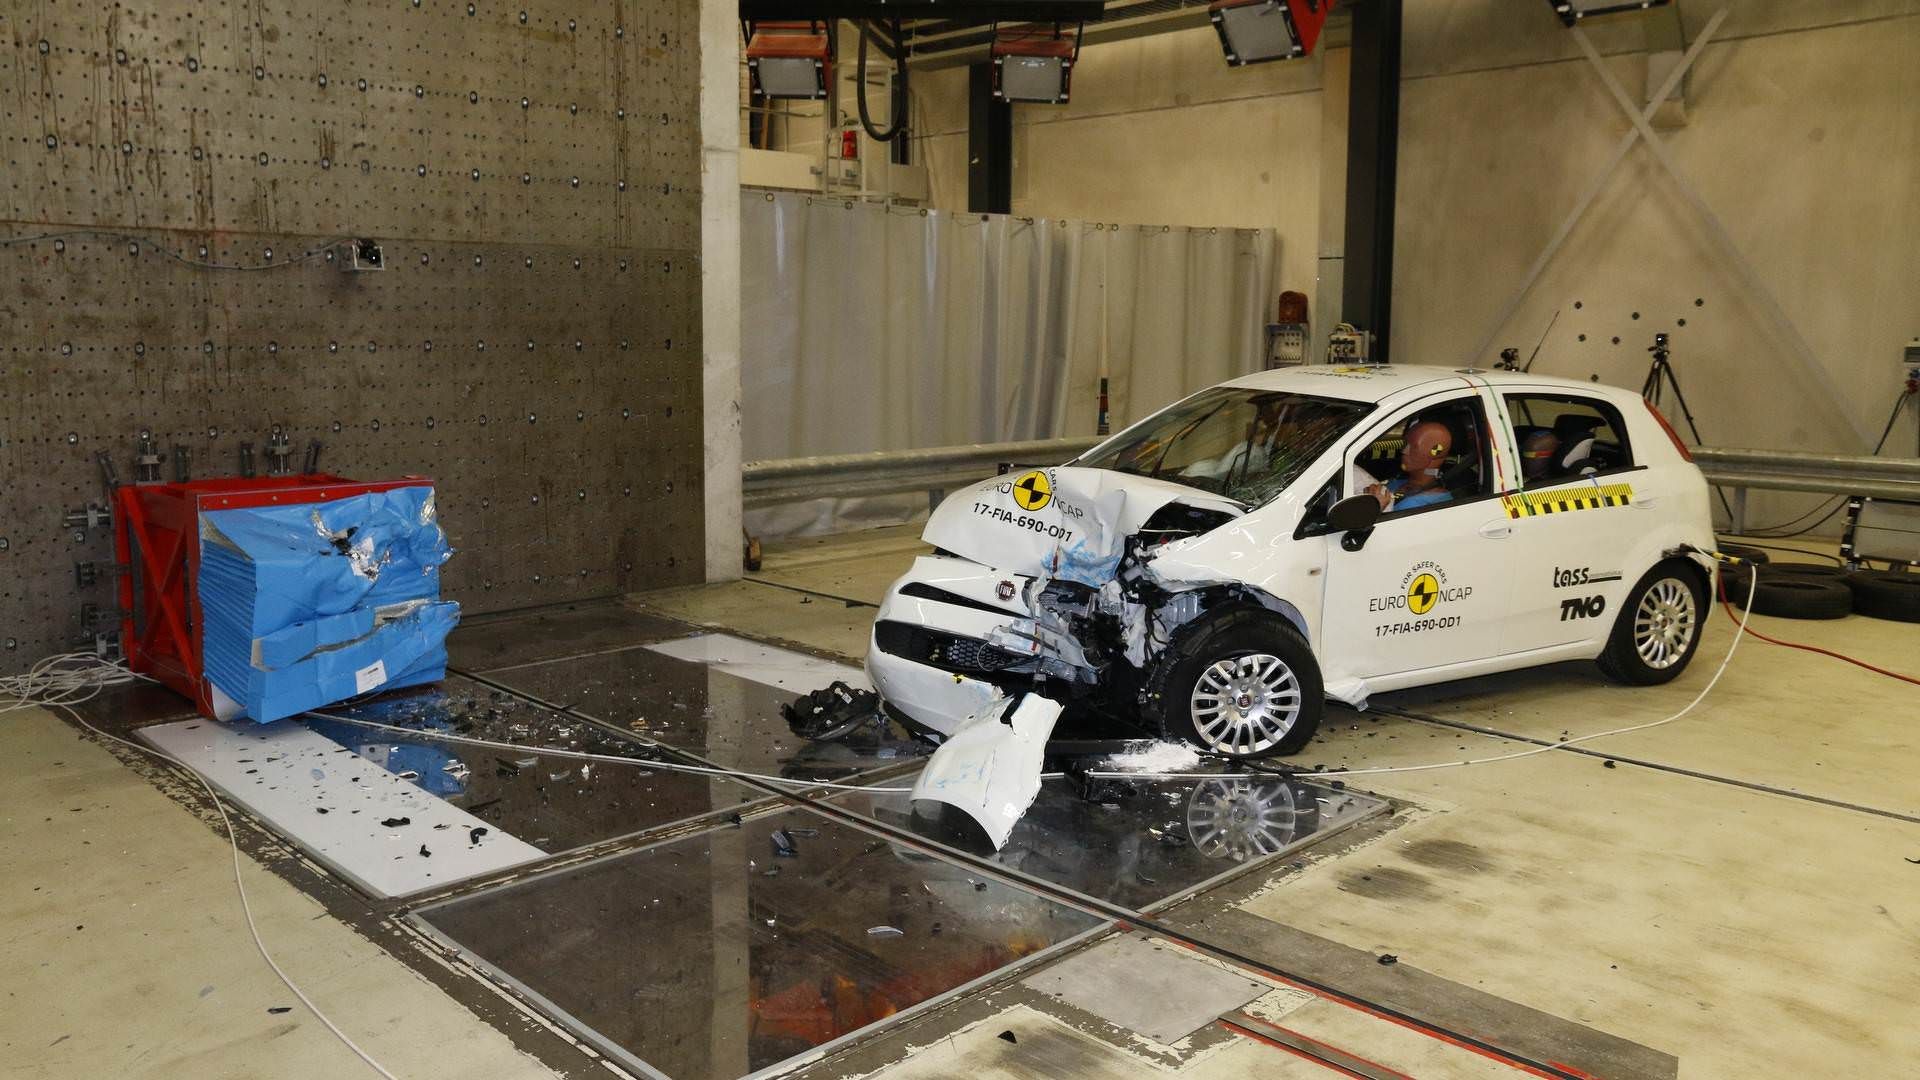 مرجع متخصصين ايران تست تصادف و ايمني خودرو / euro crash & safety test